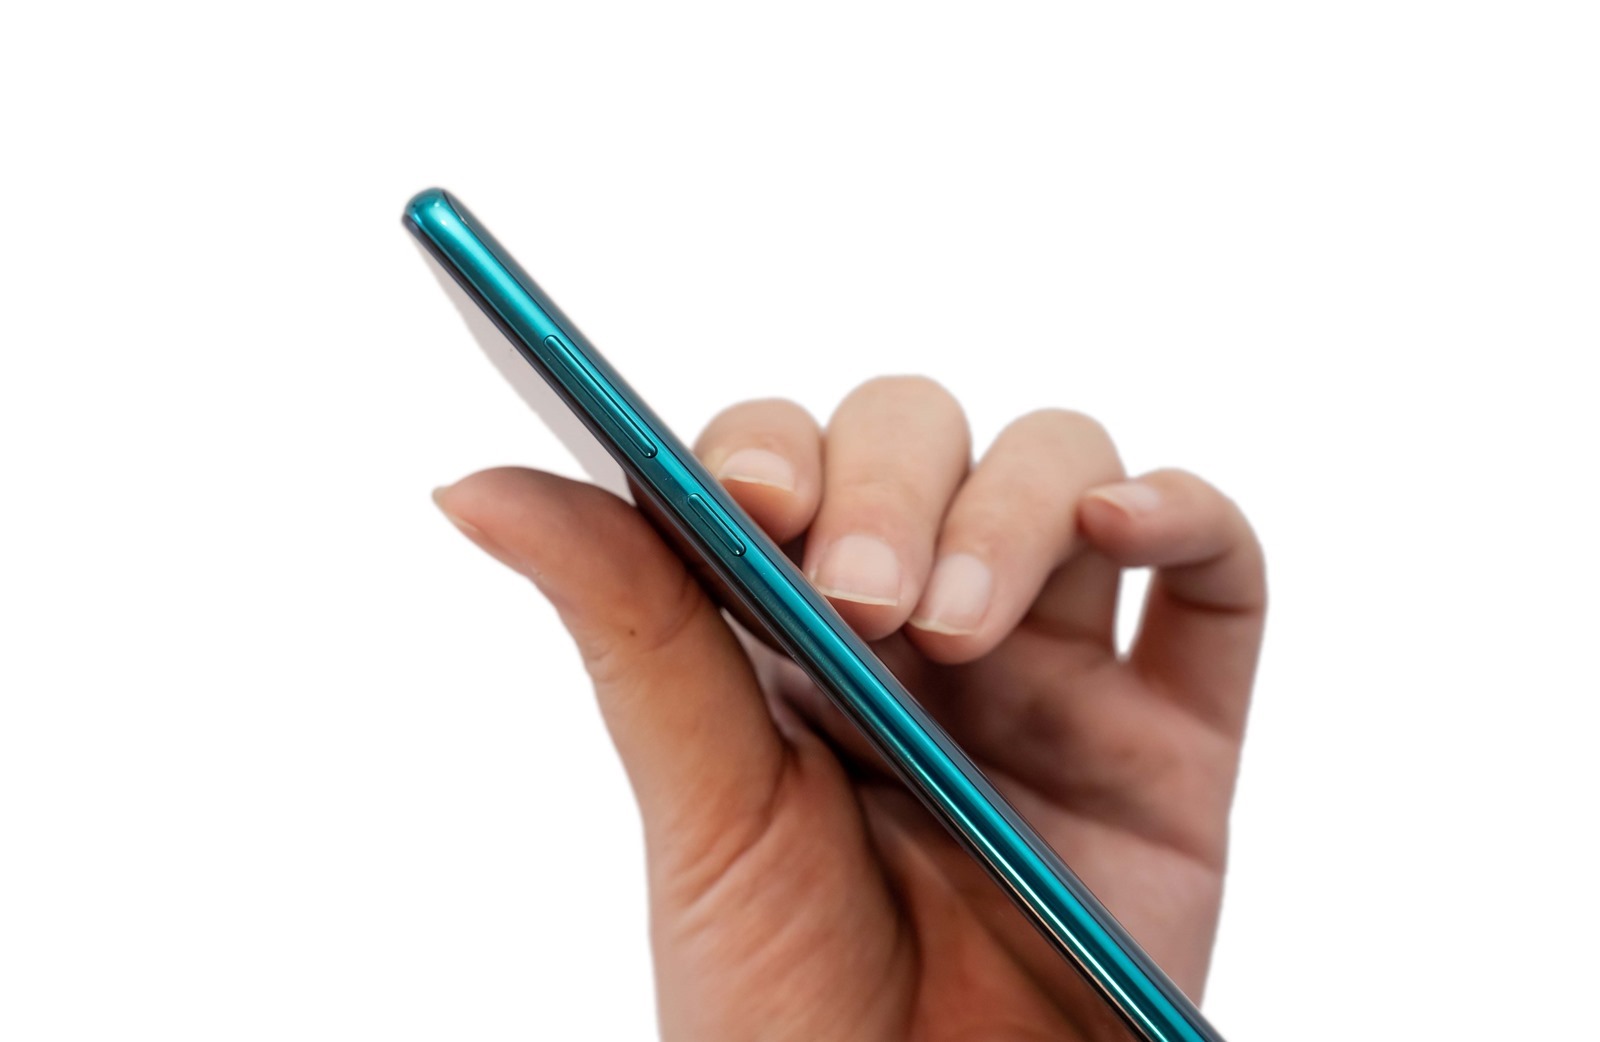 性價比之外這次強調拍照和性能！紅米 Redmi Note 8 Pro 開箱評測 @3C 達人廖阿輝